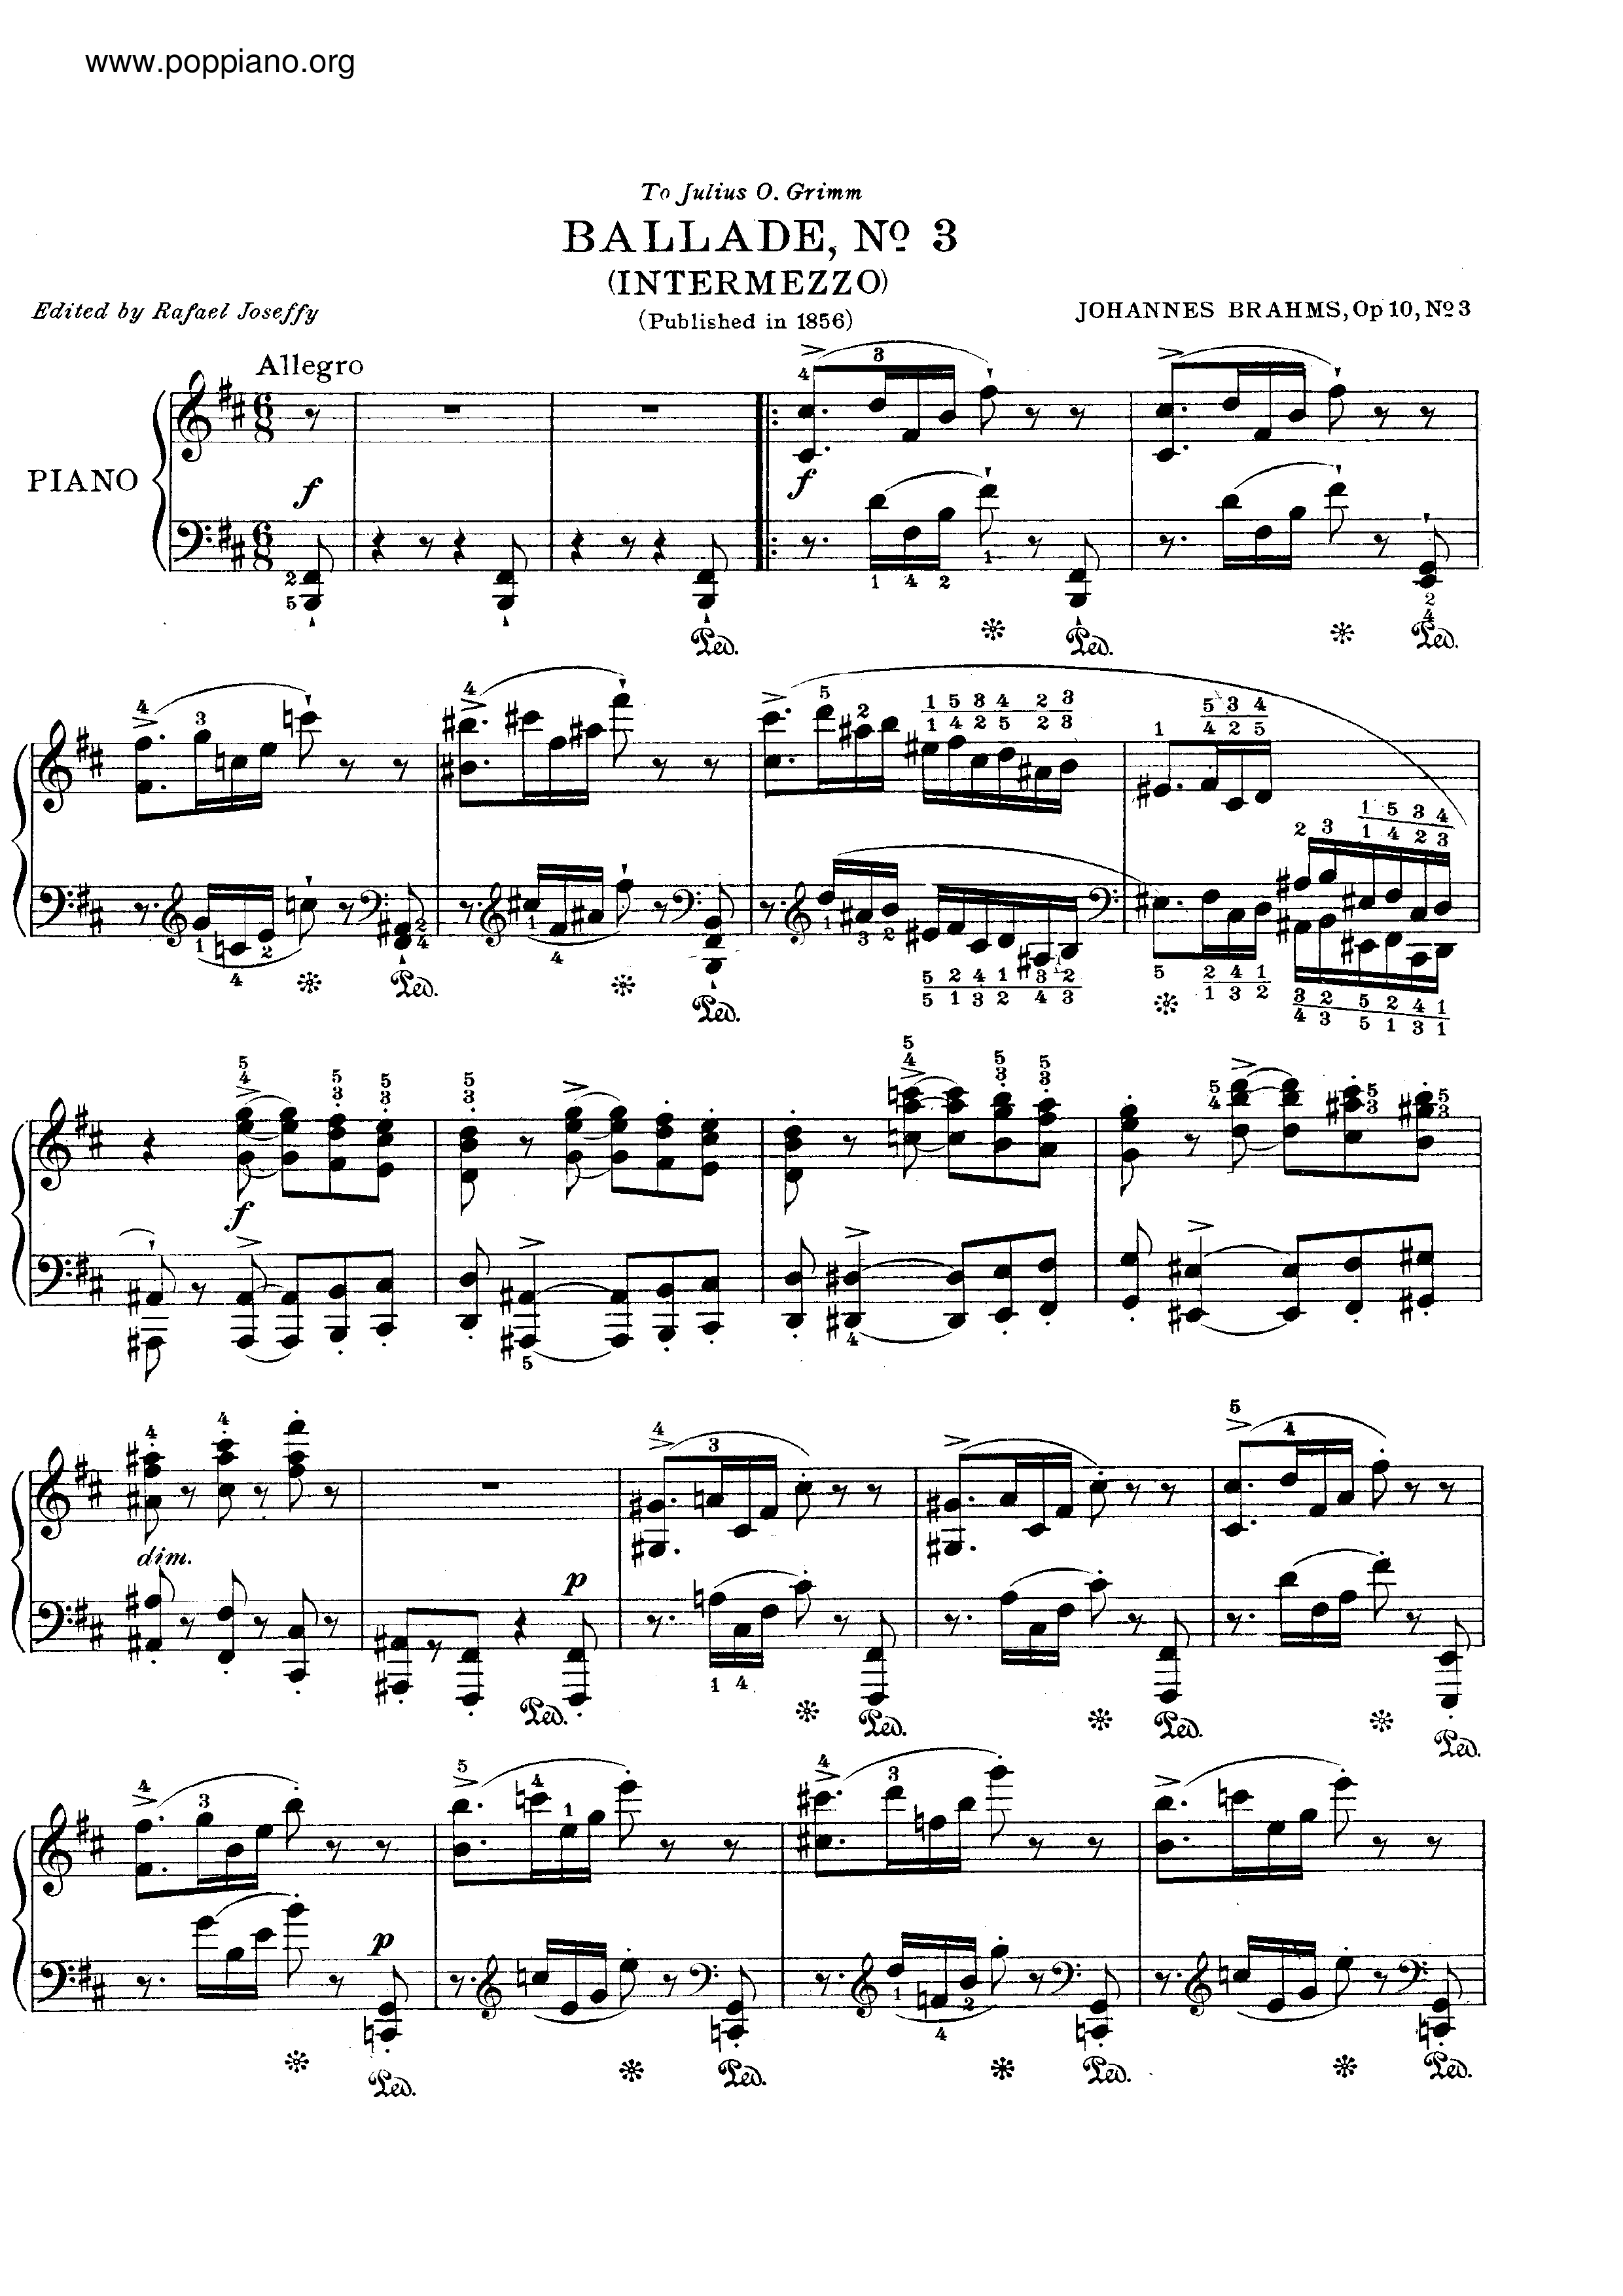 No. 3 in B minor. Intermezzo. Allegro琴譜